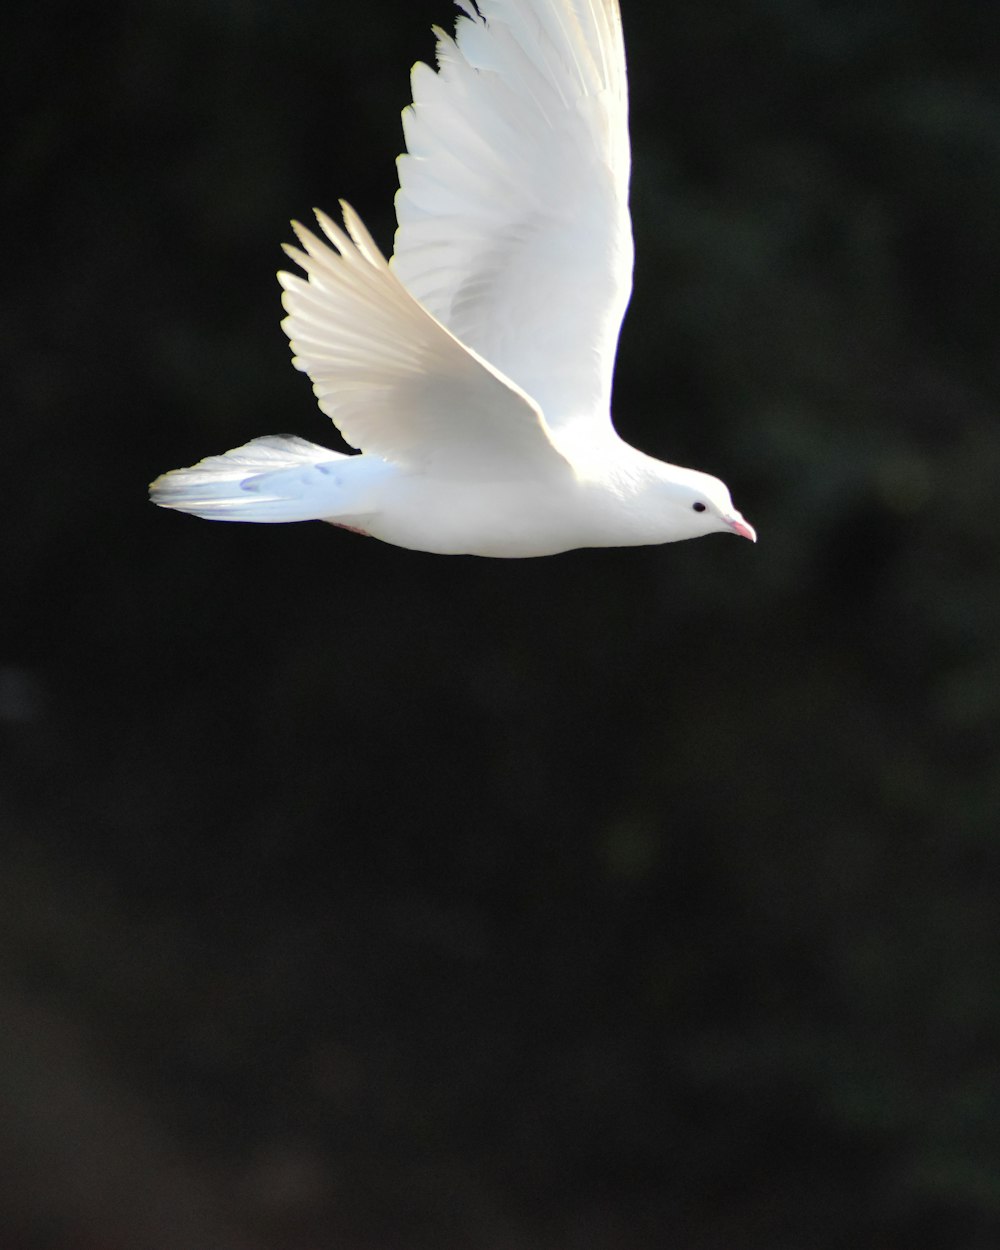 pássaro branco voando durante o dia